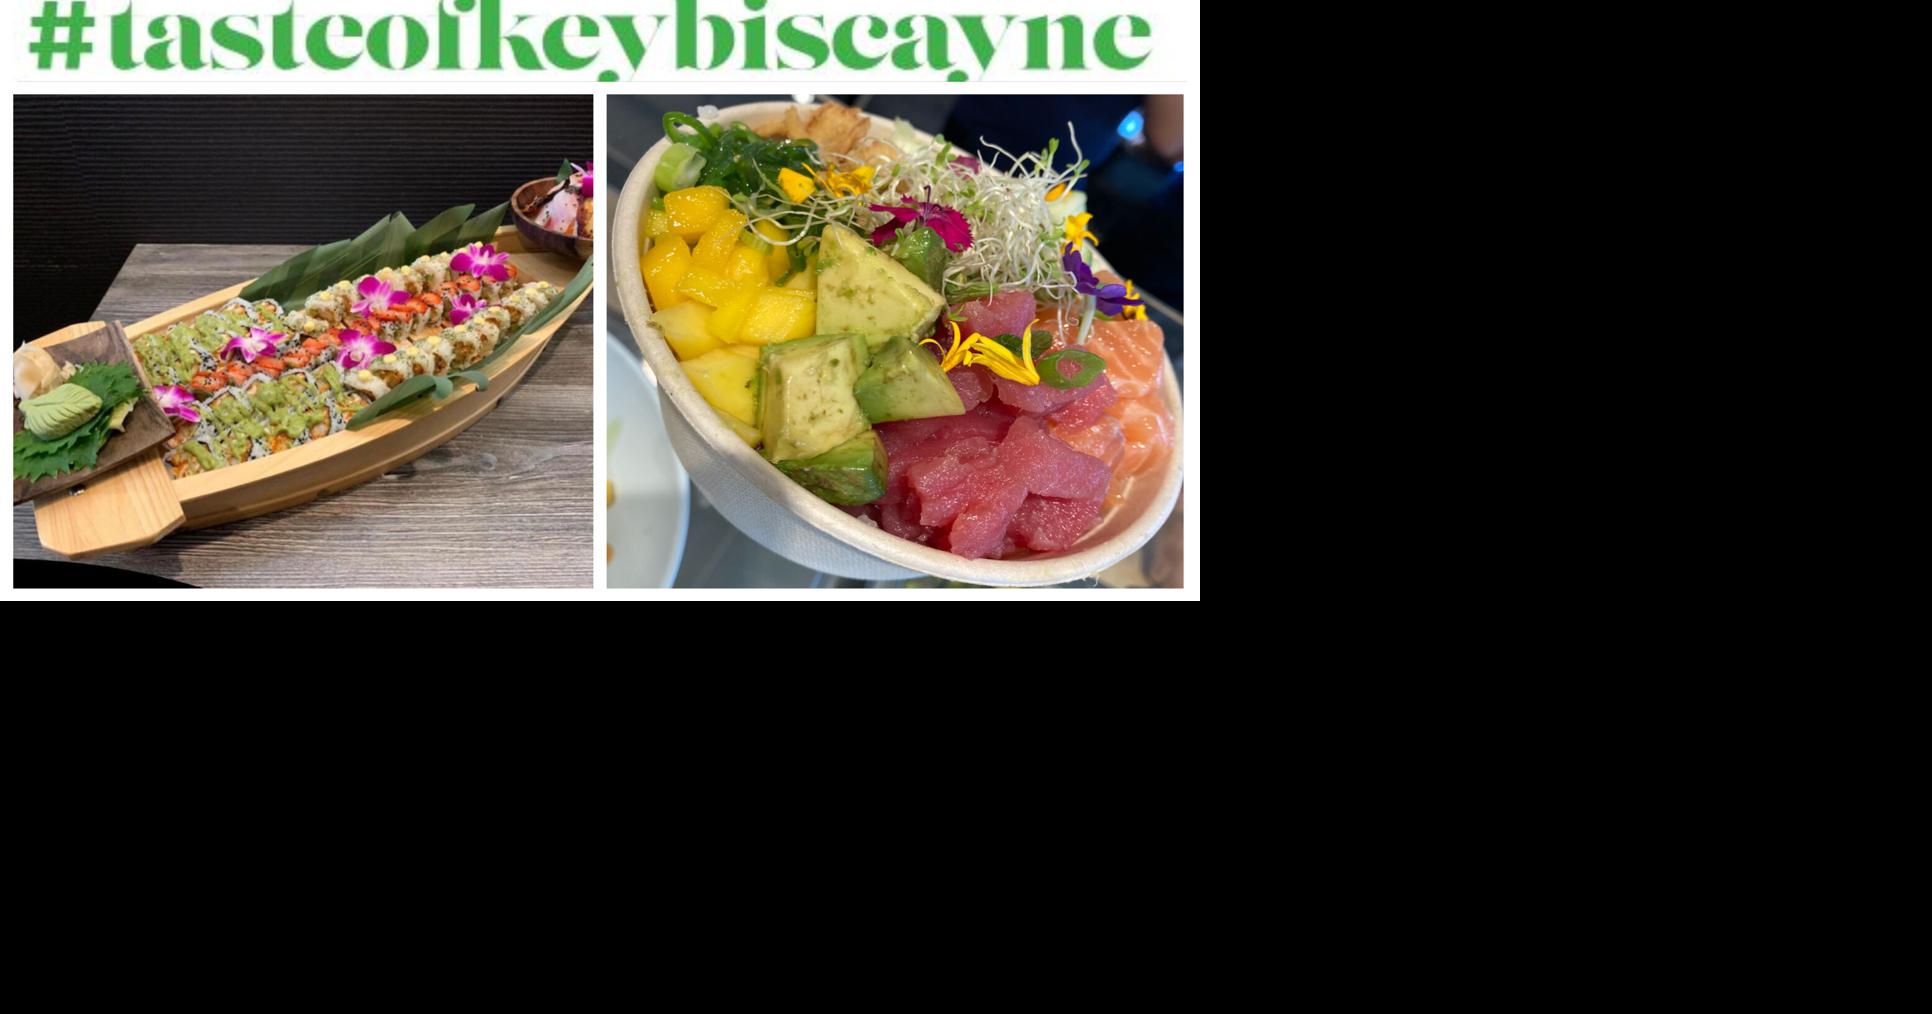 Saturday dining on Key Biscayne | Local | islandernews.com